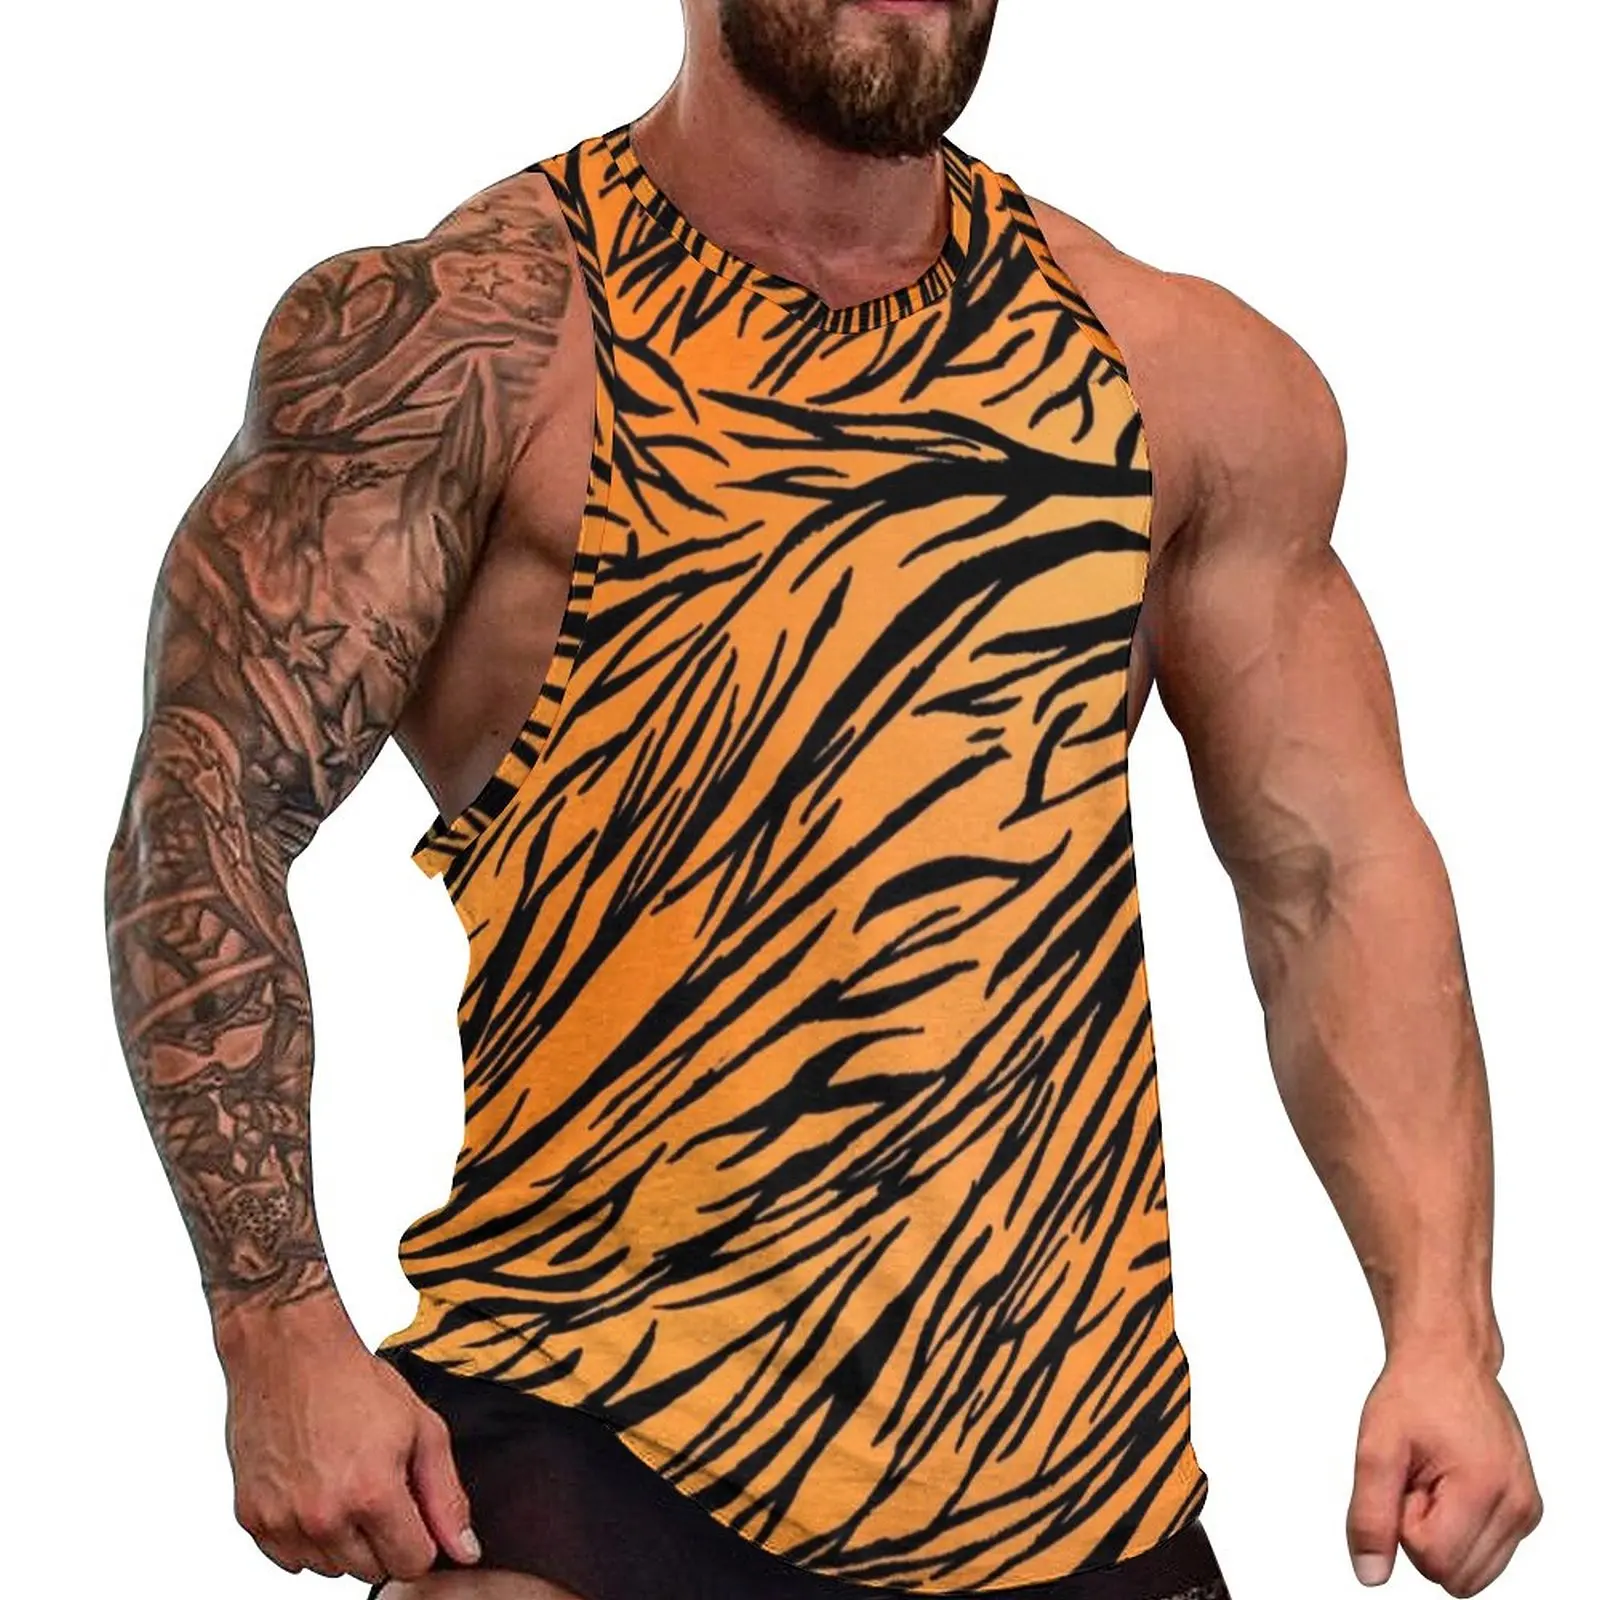 

Майка мужская летняя с принтом тигра, крутая тренировочная рубашка в черную полоску, без рукавов, с графическим принтом, размеры 3XL, 4XL, 5XL